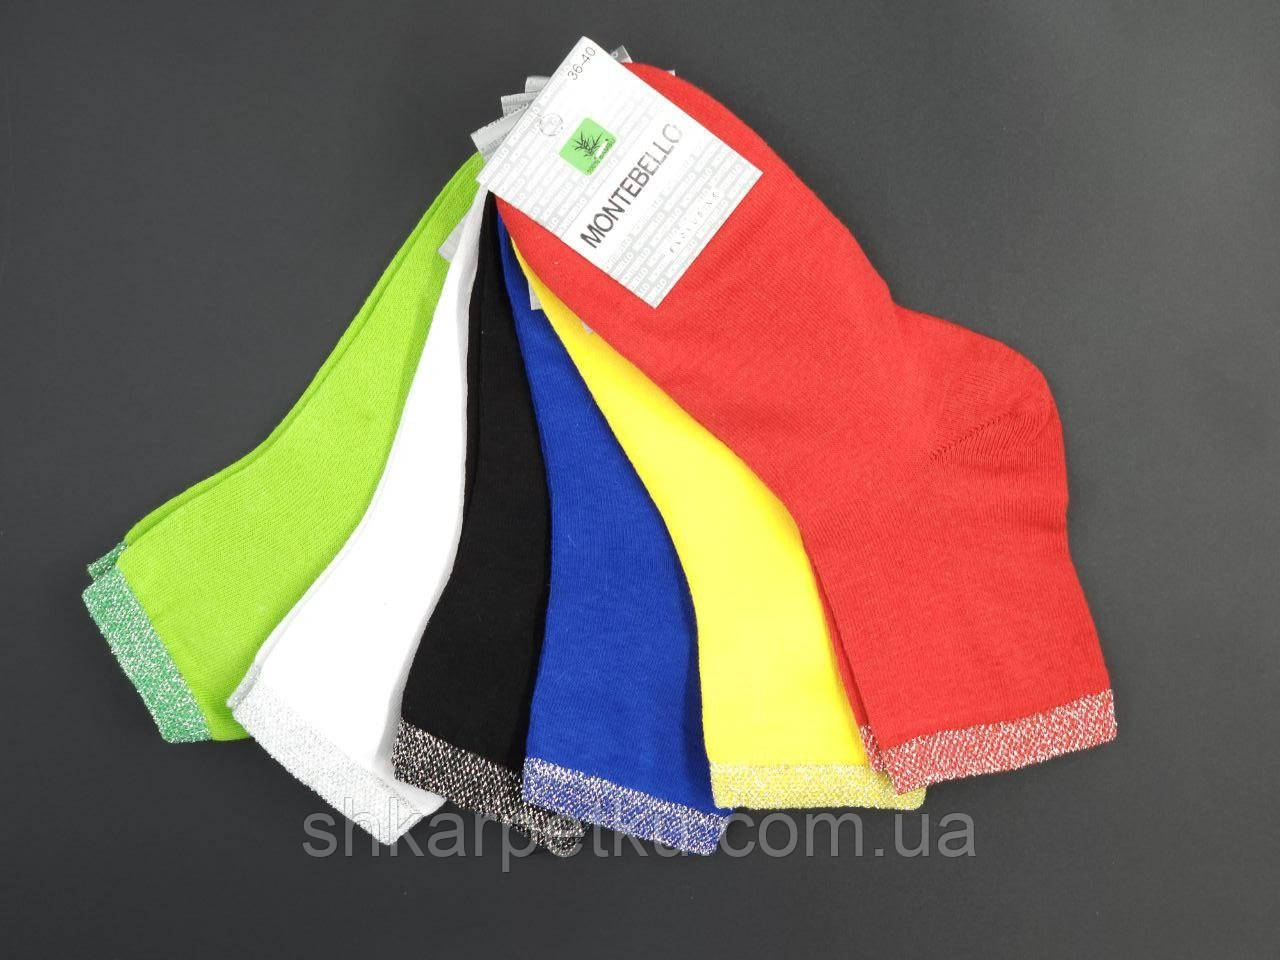 Жіночі шкарпетки з люрексом стрейчеві Montebello 35-40 12 шт в уп білі жовті червоні сині